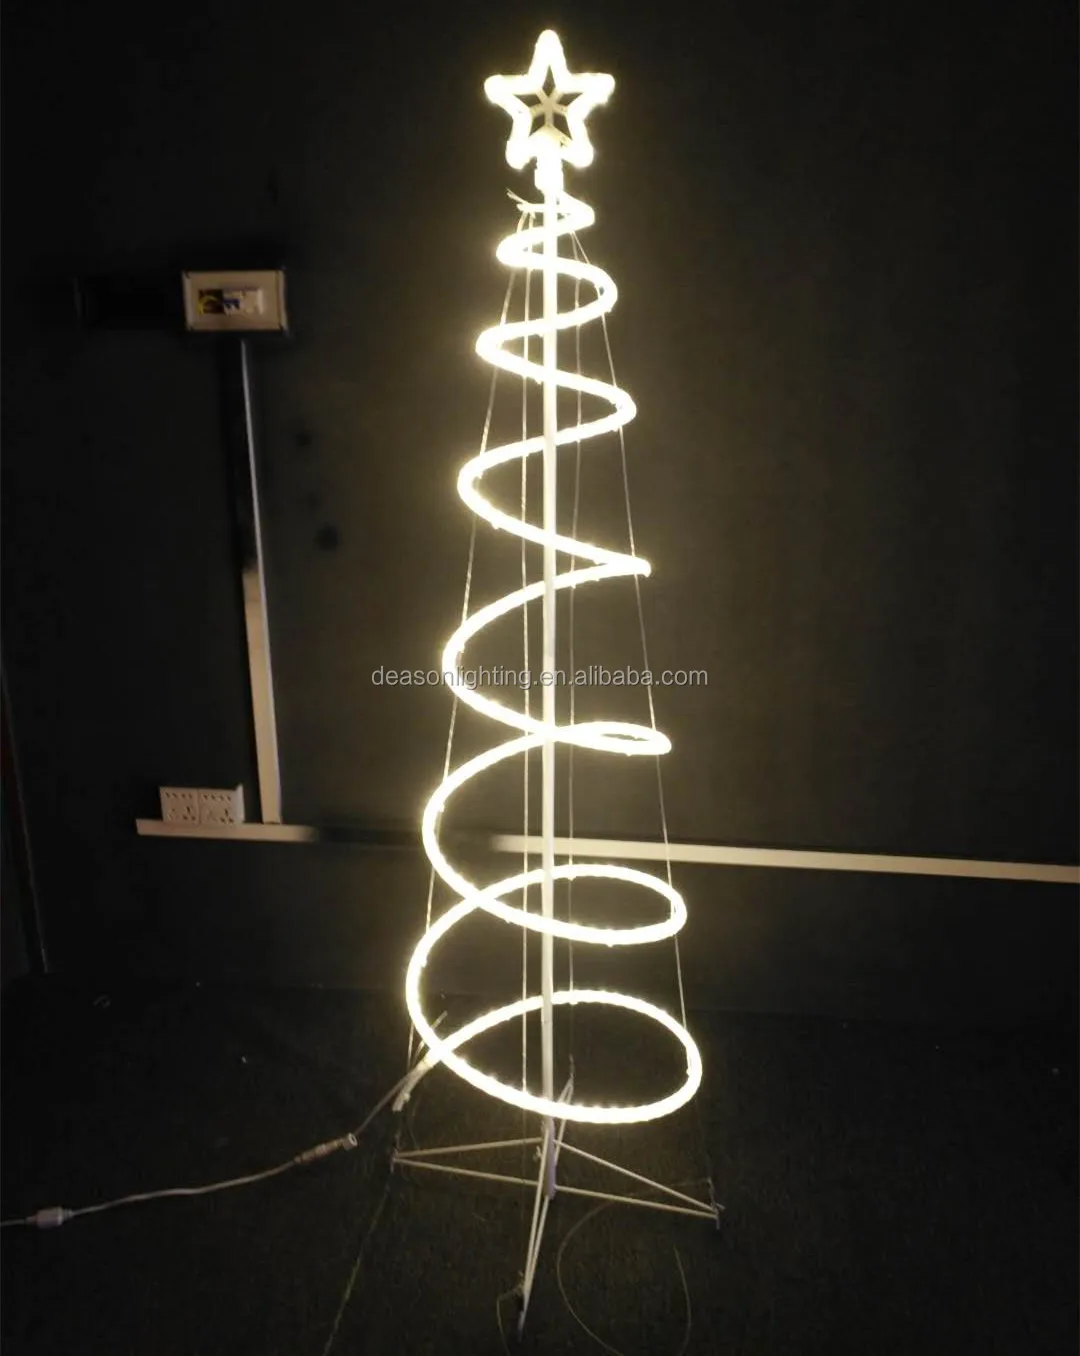 Stewart Island scheerapparaat robot Led Lichtslang Spiraal Kerstboom - Buy Kerstboom Vormige Licht,Led Spiraal  Kerstboom,Outdoor Verlichte Kerstboom Product on Alibaba.com